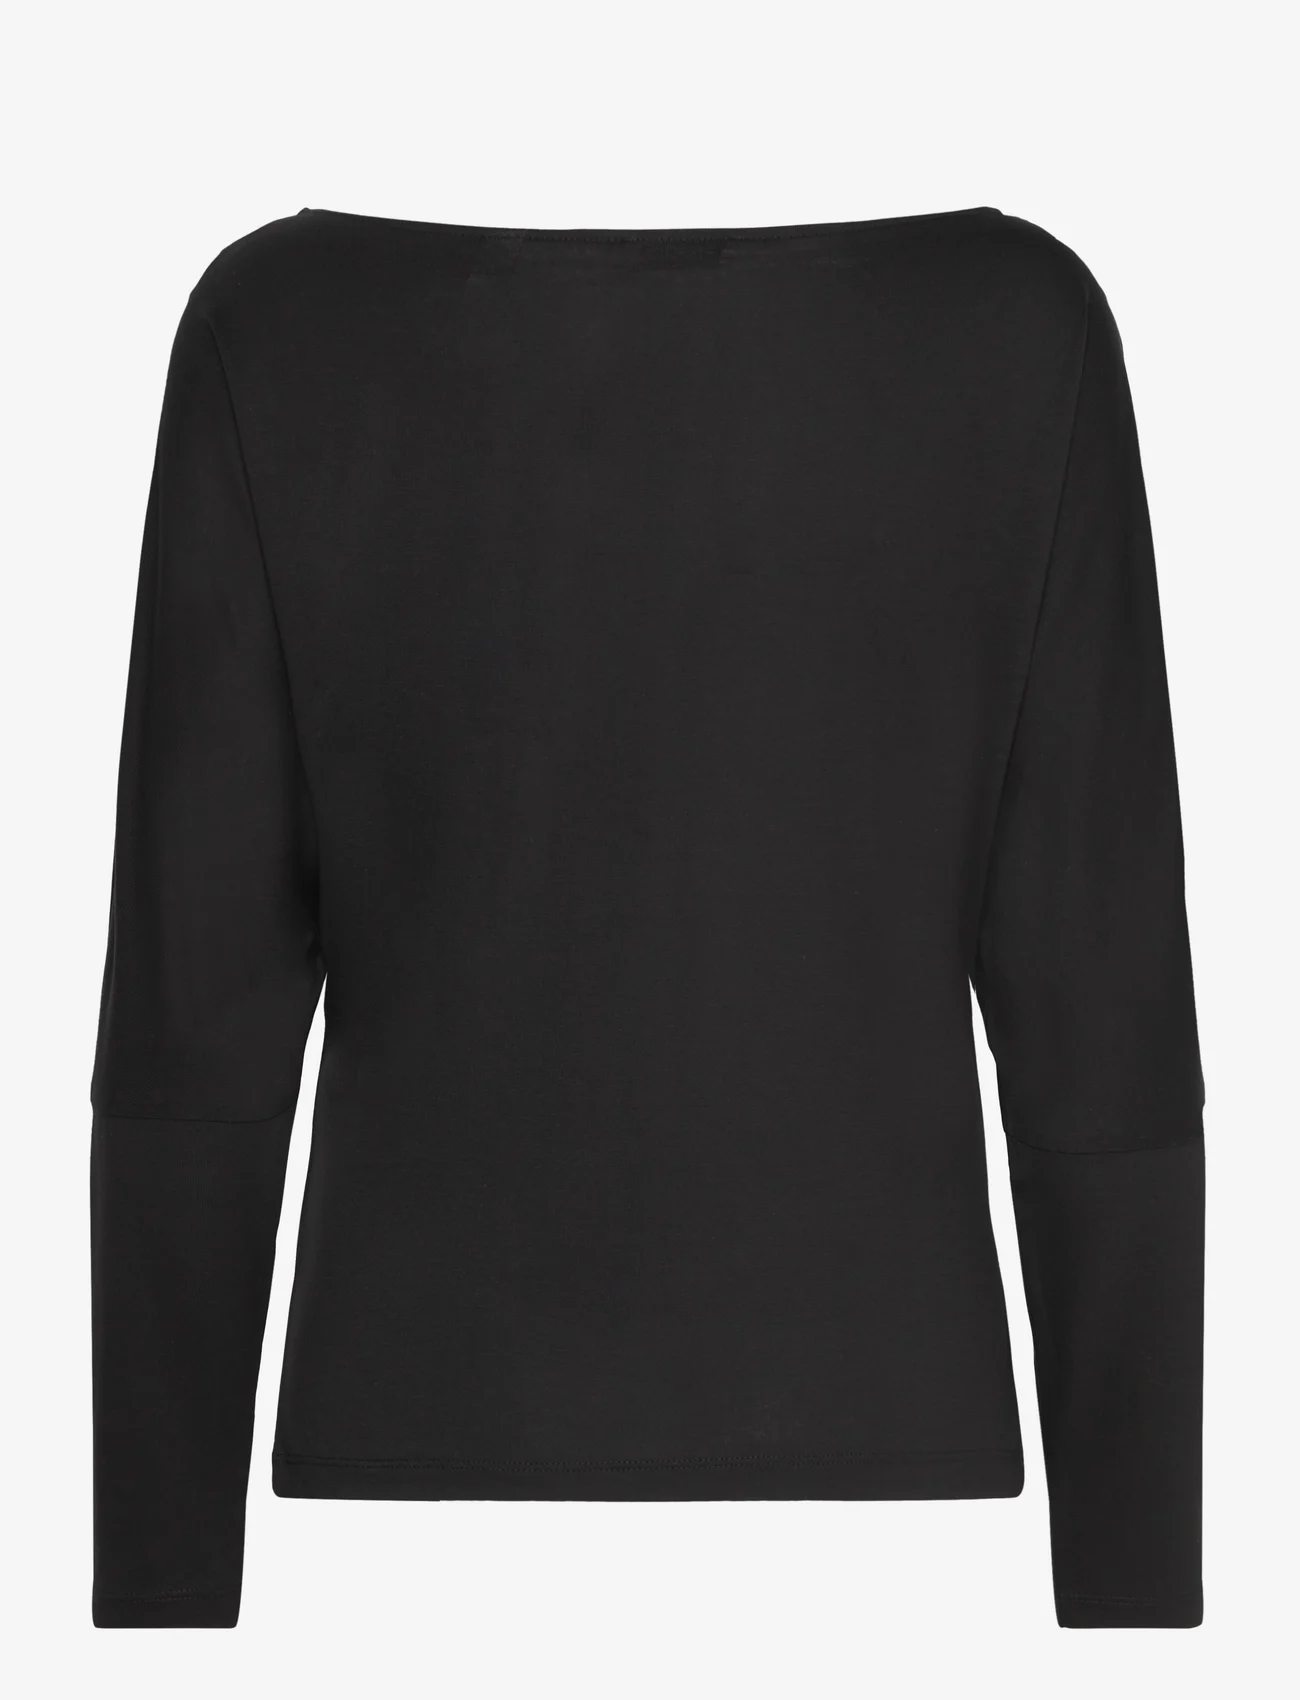 Esprit Casual - T-Shirts - tops met lange mouwen - black - 1